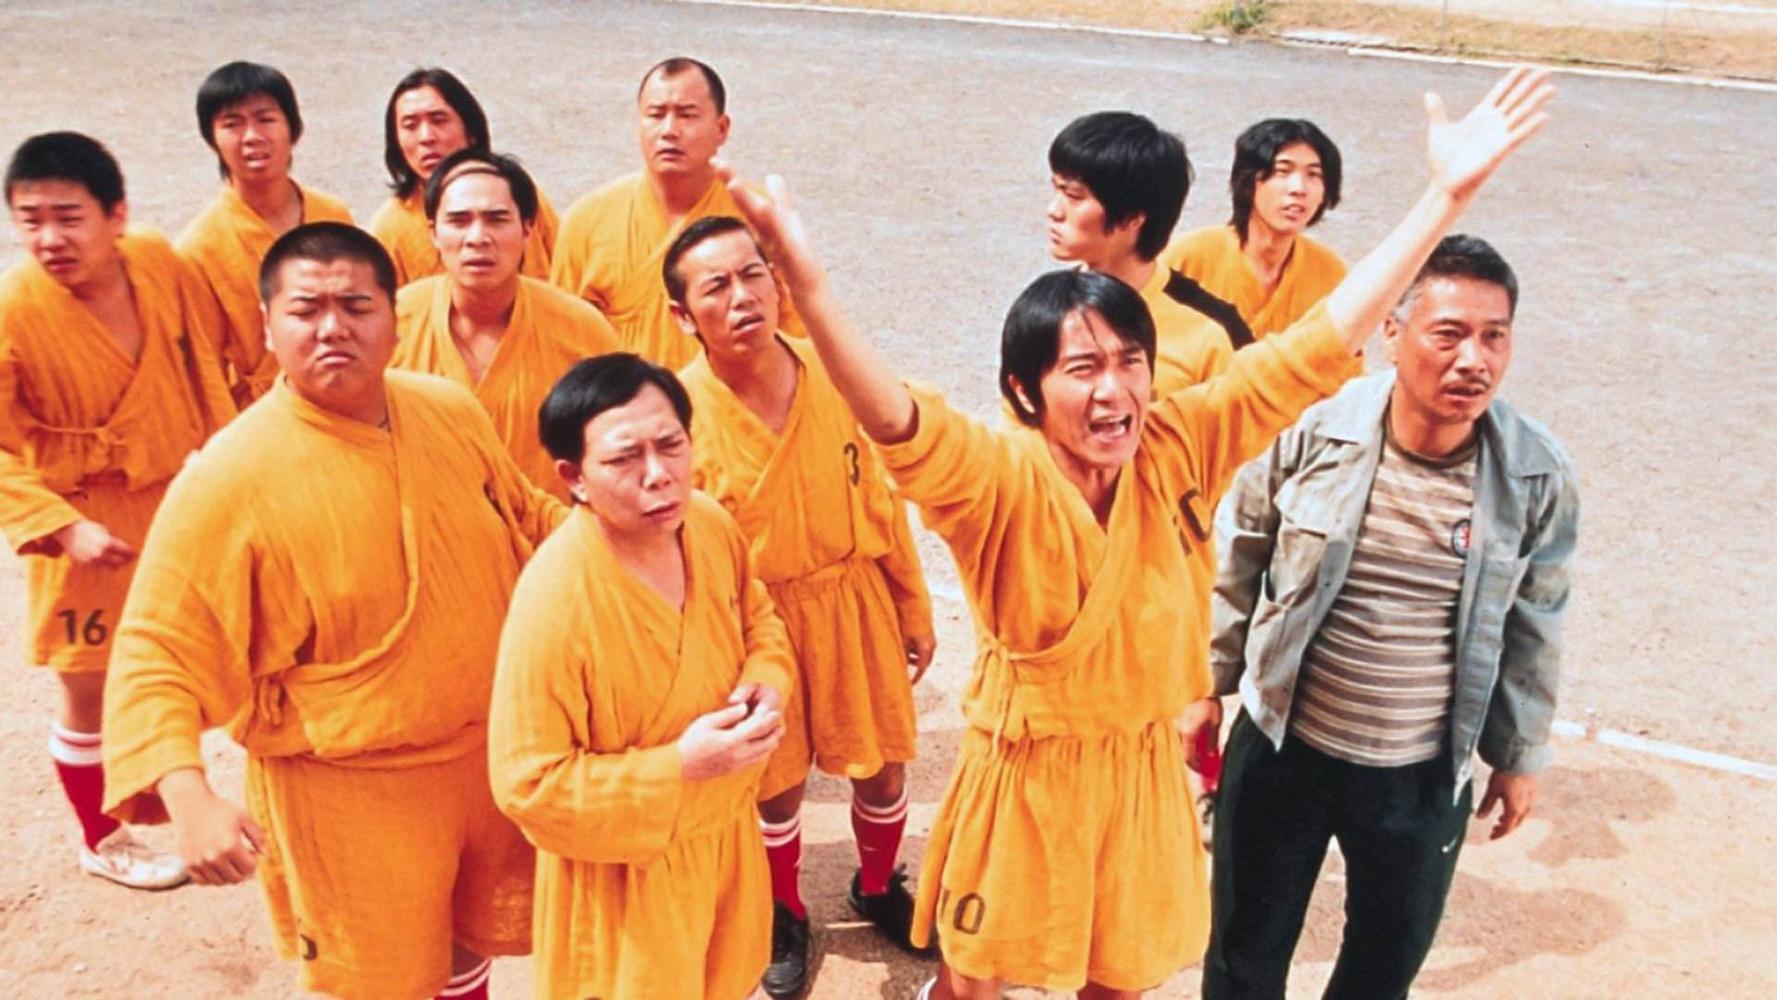 林子聪（第2排左一）于《少林足球》饰演六师弟与吴孟达（前排右一）结缘，两人因有共同兴趣，私下也时常联系。

